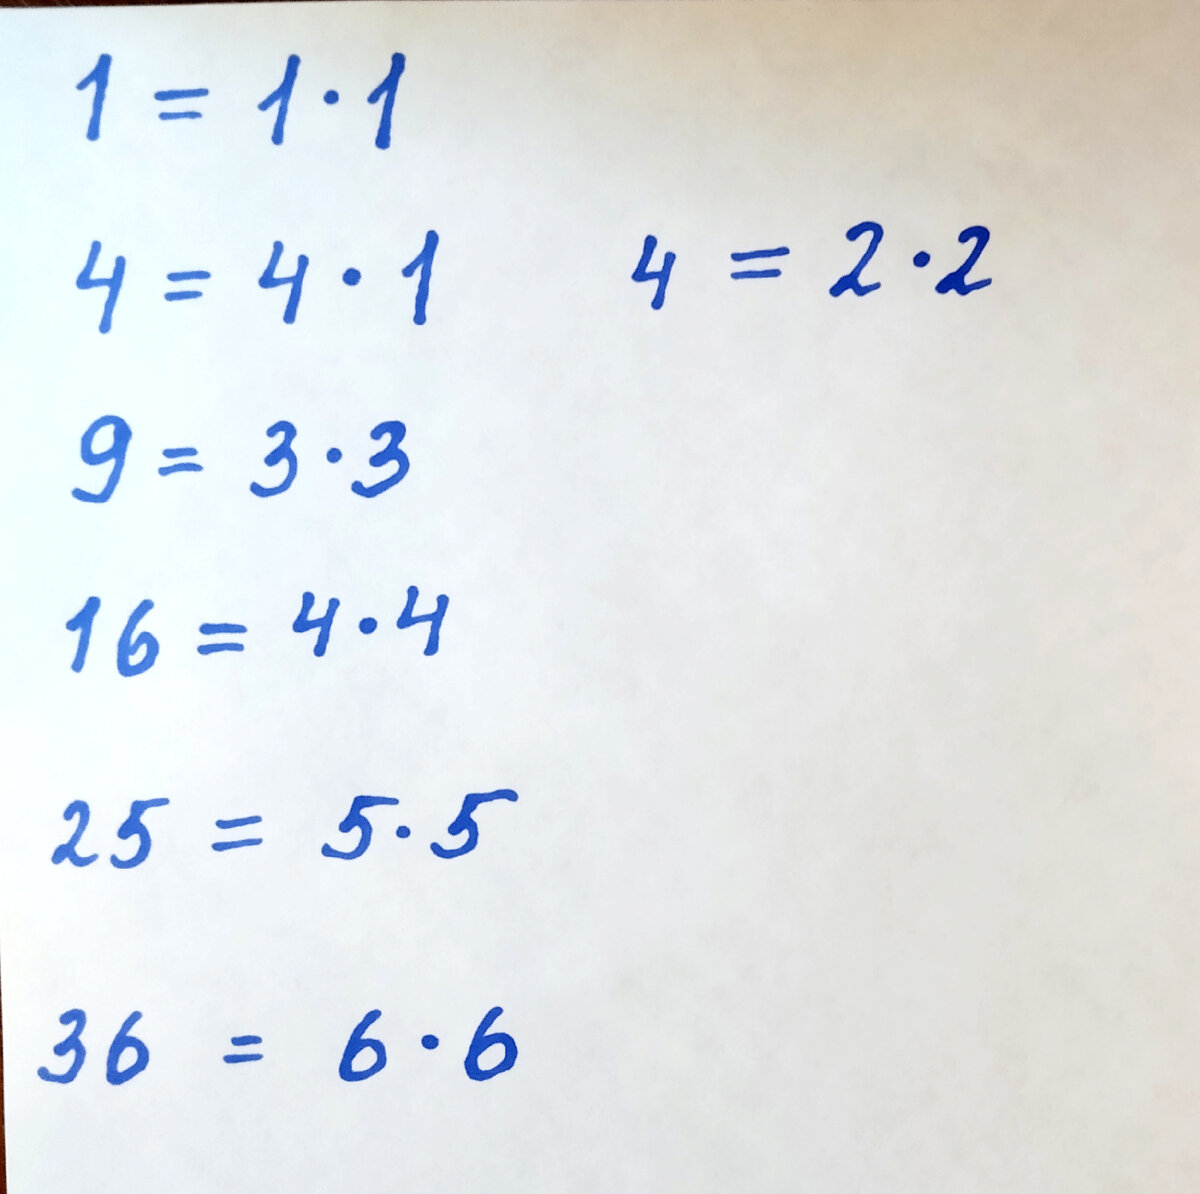 Разложения чисел 1,4,9,16,25,36 на множители, не превышающие 6.